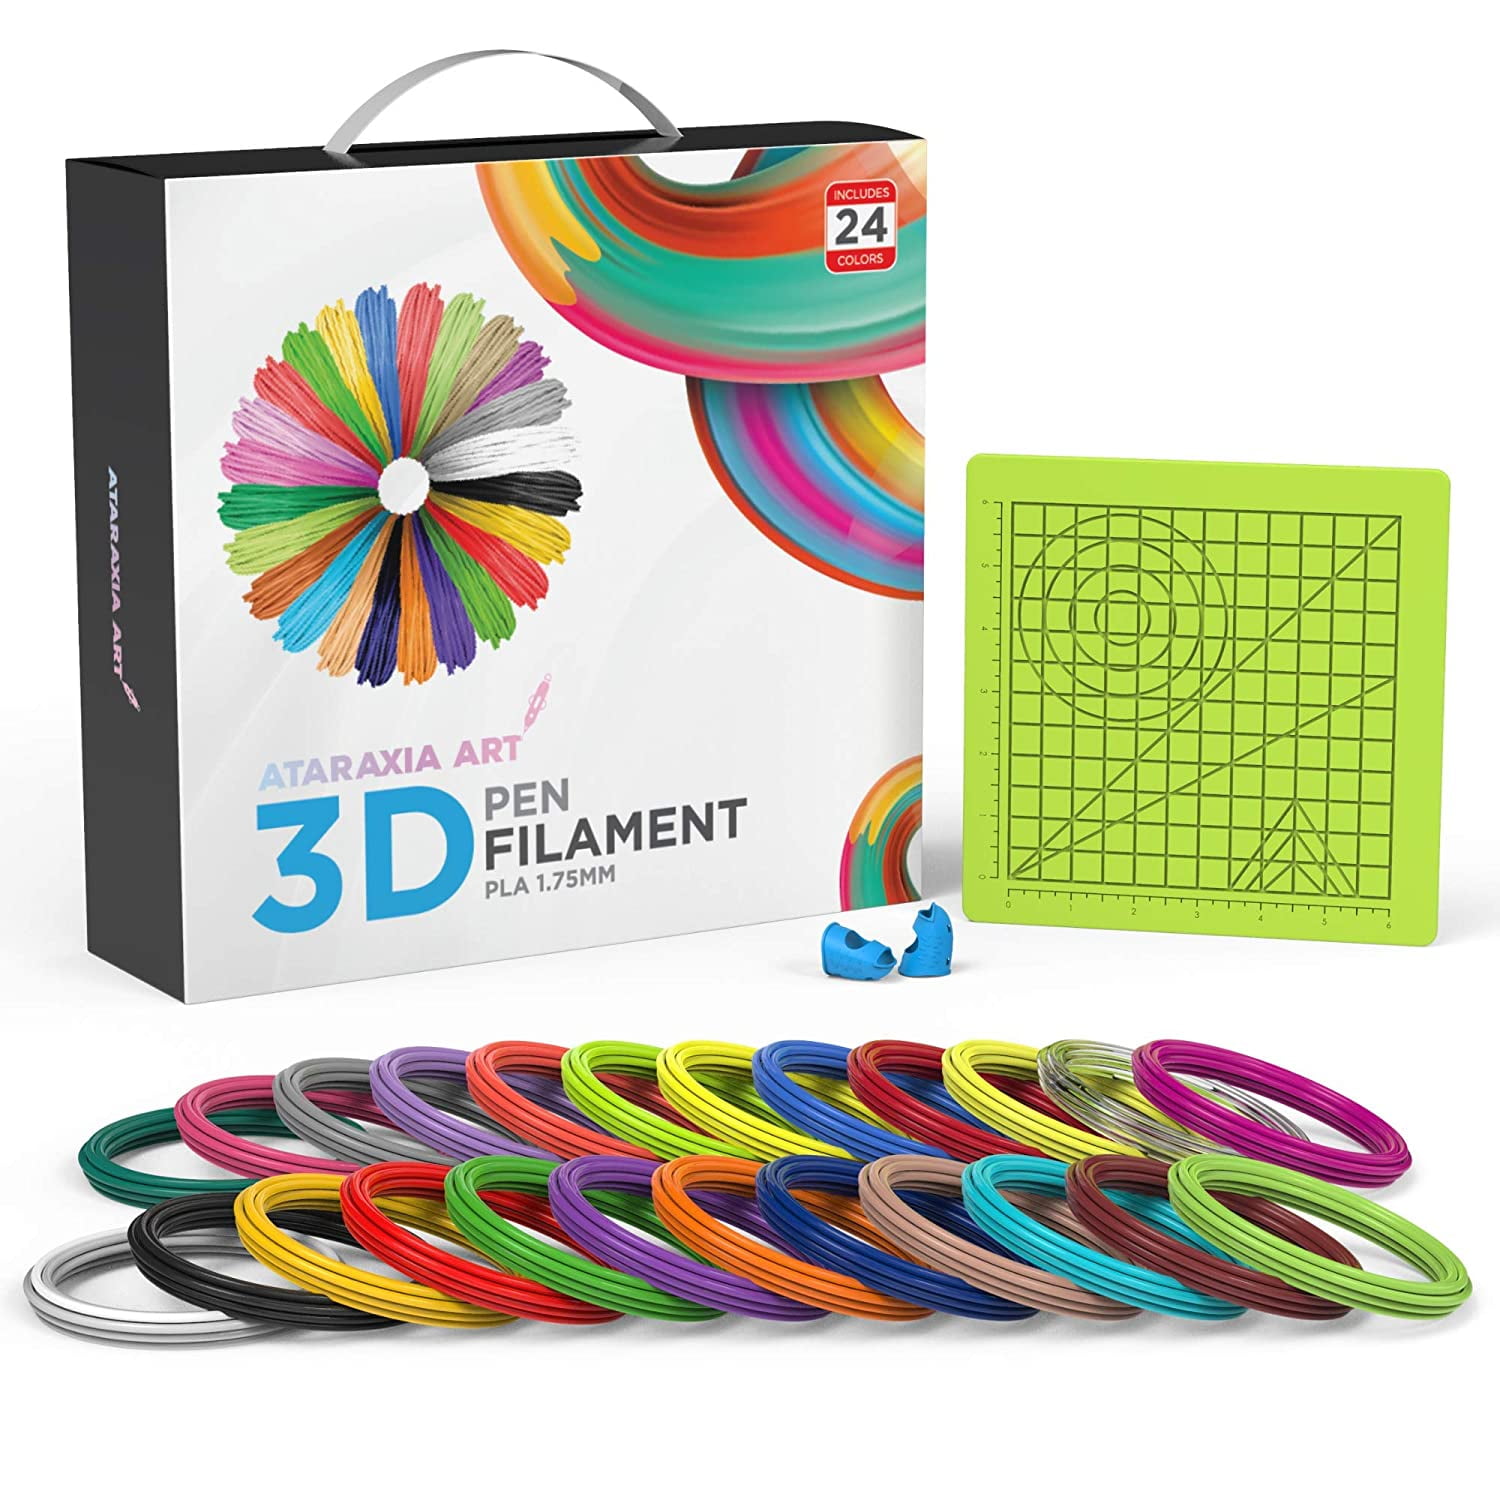 No Smells and Easy to Peel Off Filament for 3D Printer 5m Length 3D Printing Filament Colourful 10 Packs PLA 3D Pen Filament Refills 1.75mm No Bubbles 